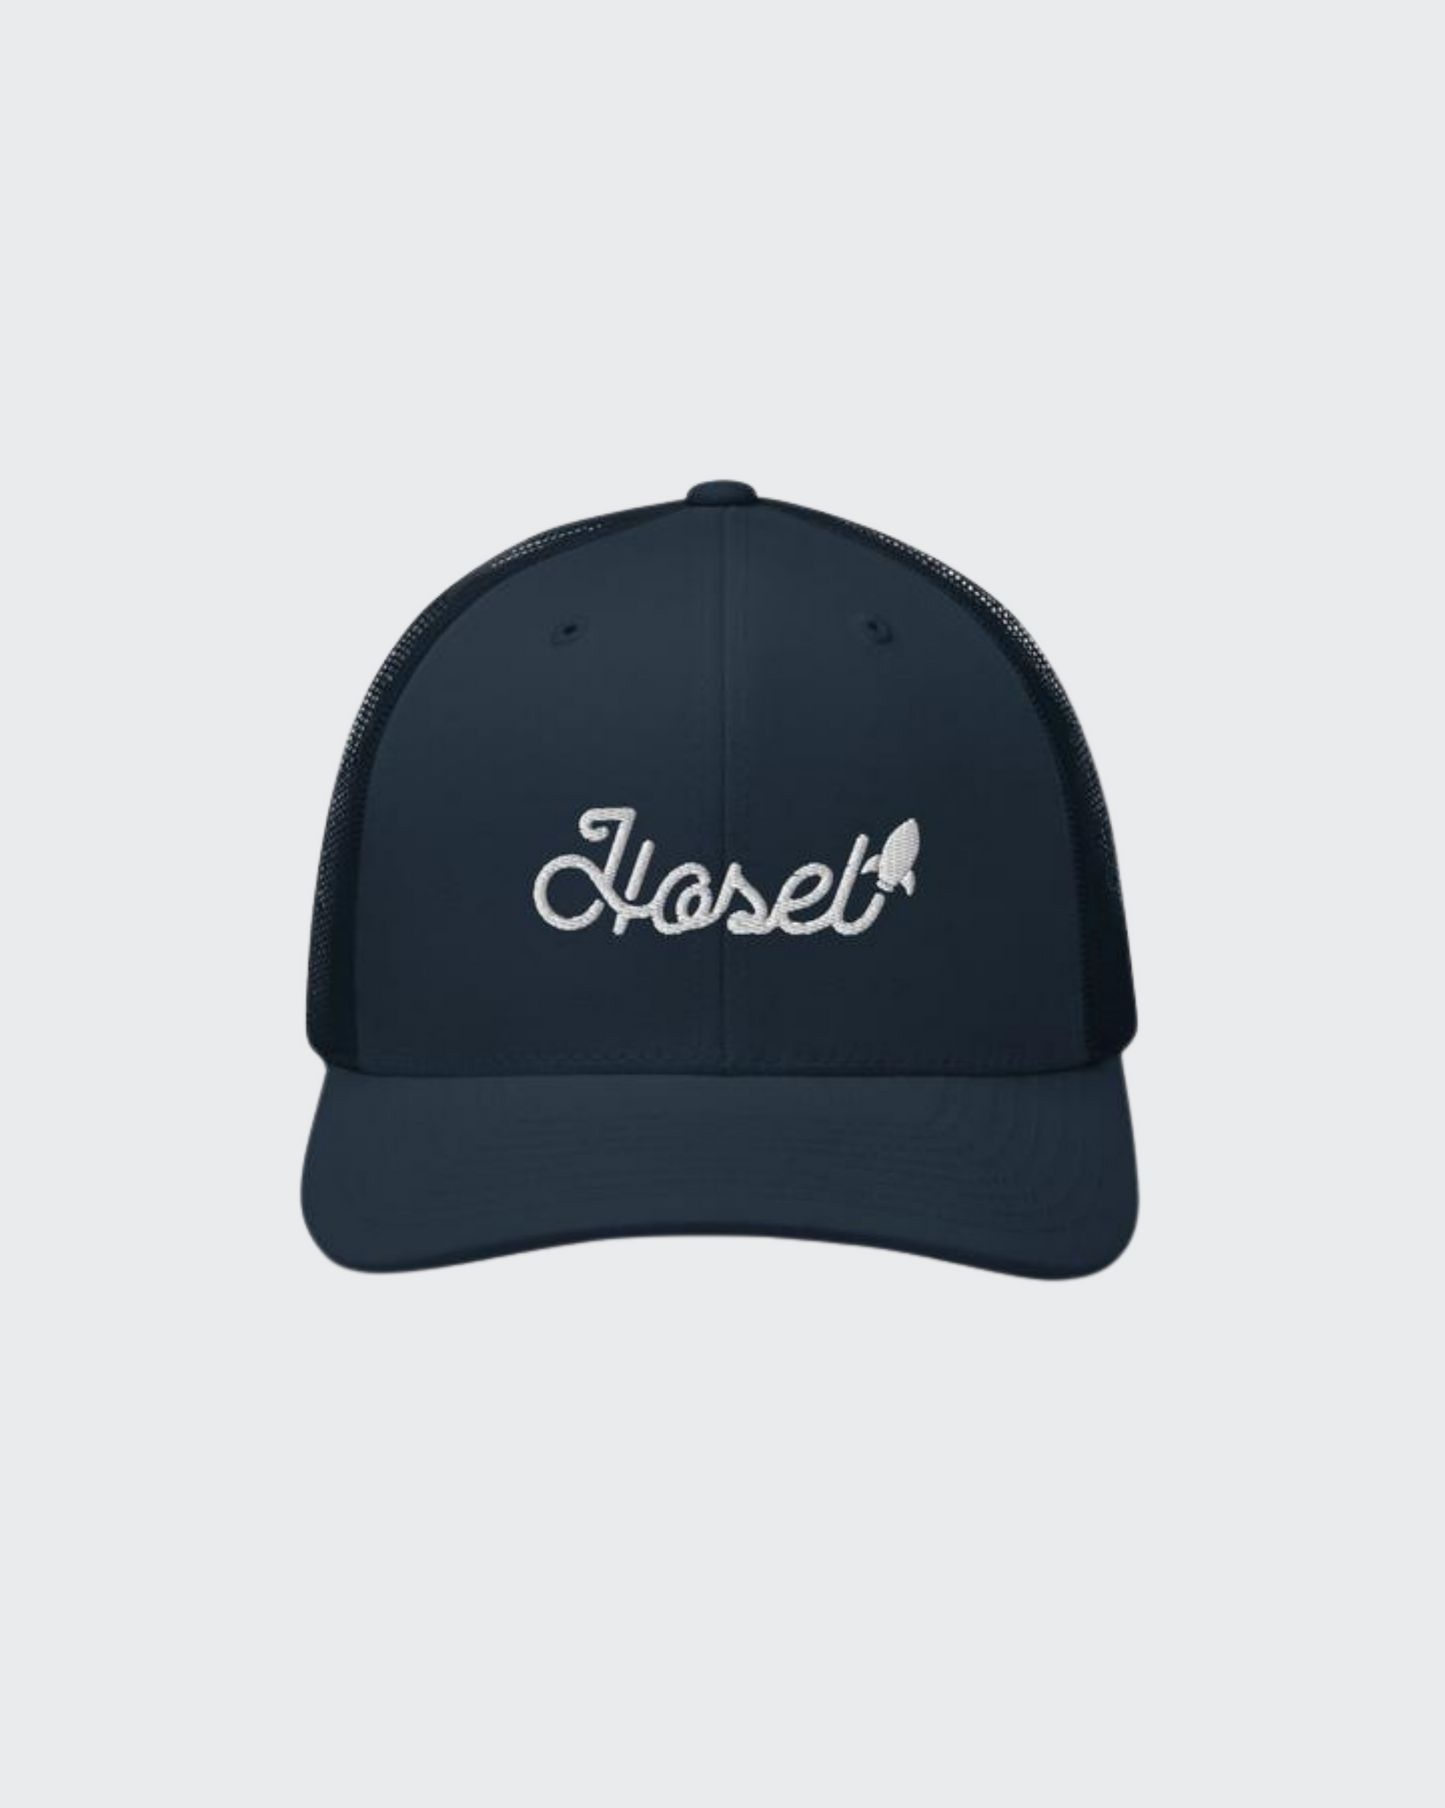 Hosel Rocket Mesh Back Hat